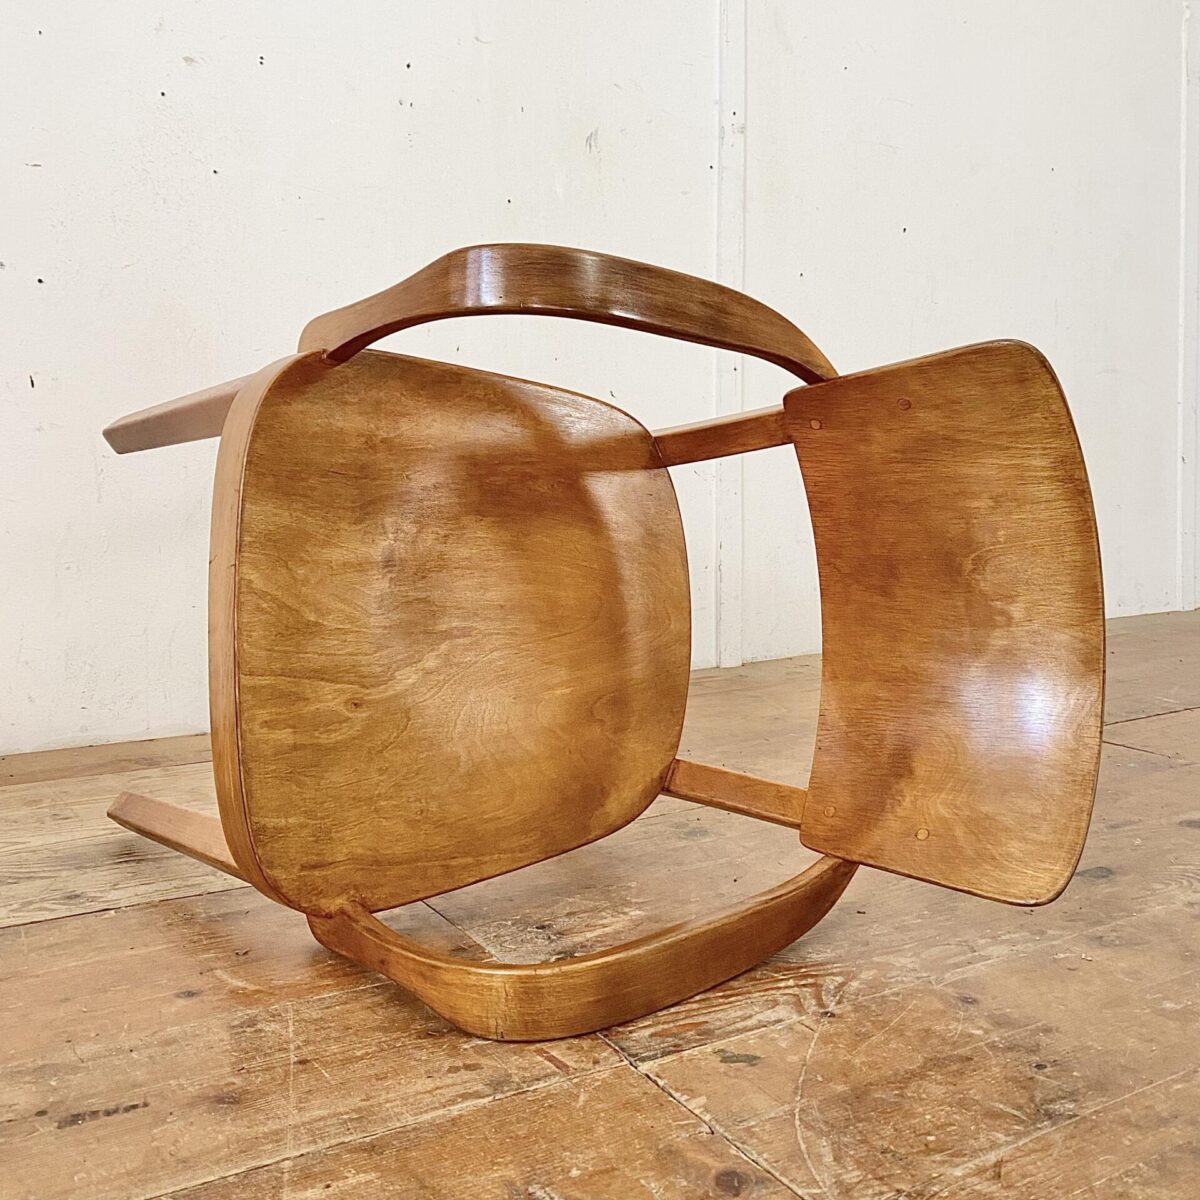 Deuxieme.shop Horgen Glarus Armlehnstuhl. Sitz und Lehne aus Birken Sperrholz, formverleimt. Die restlichen Teile sind aus Buche Vollholz, Dampfgebogen. Der Stuhl ist in stabilem Original Zustand, mit leichter Alterspatina.